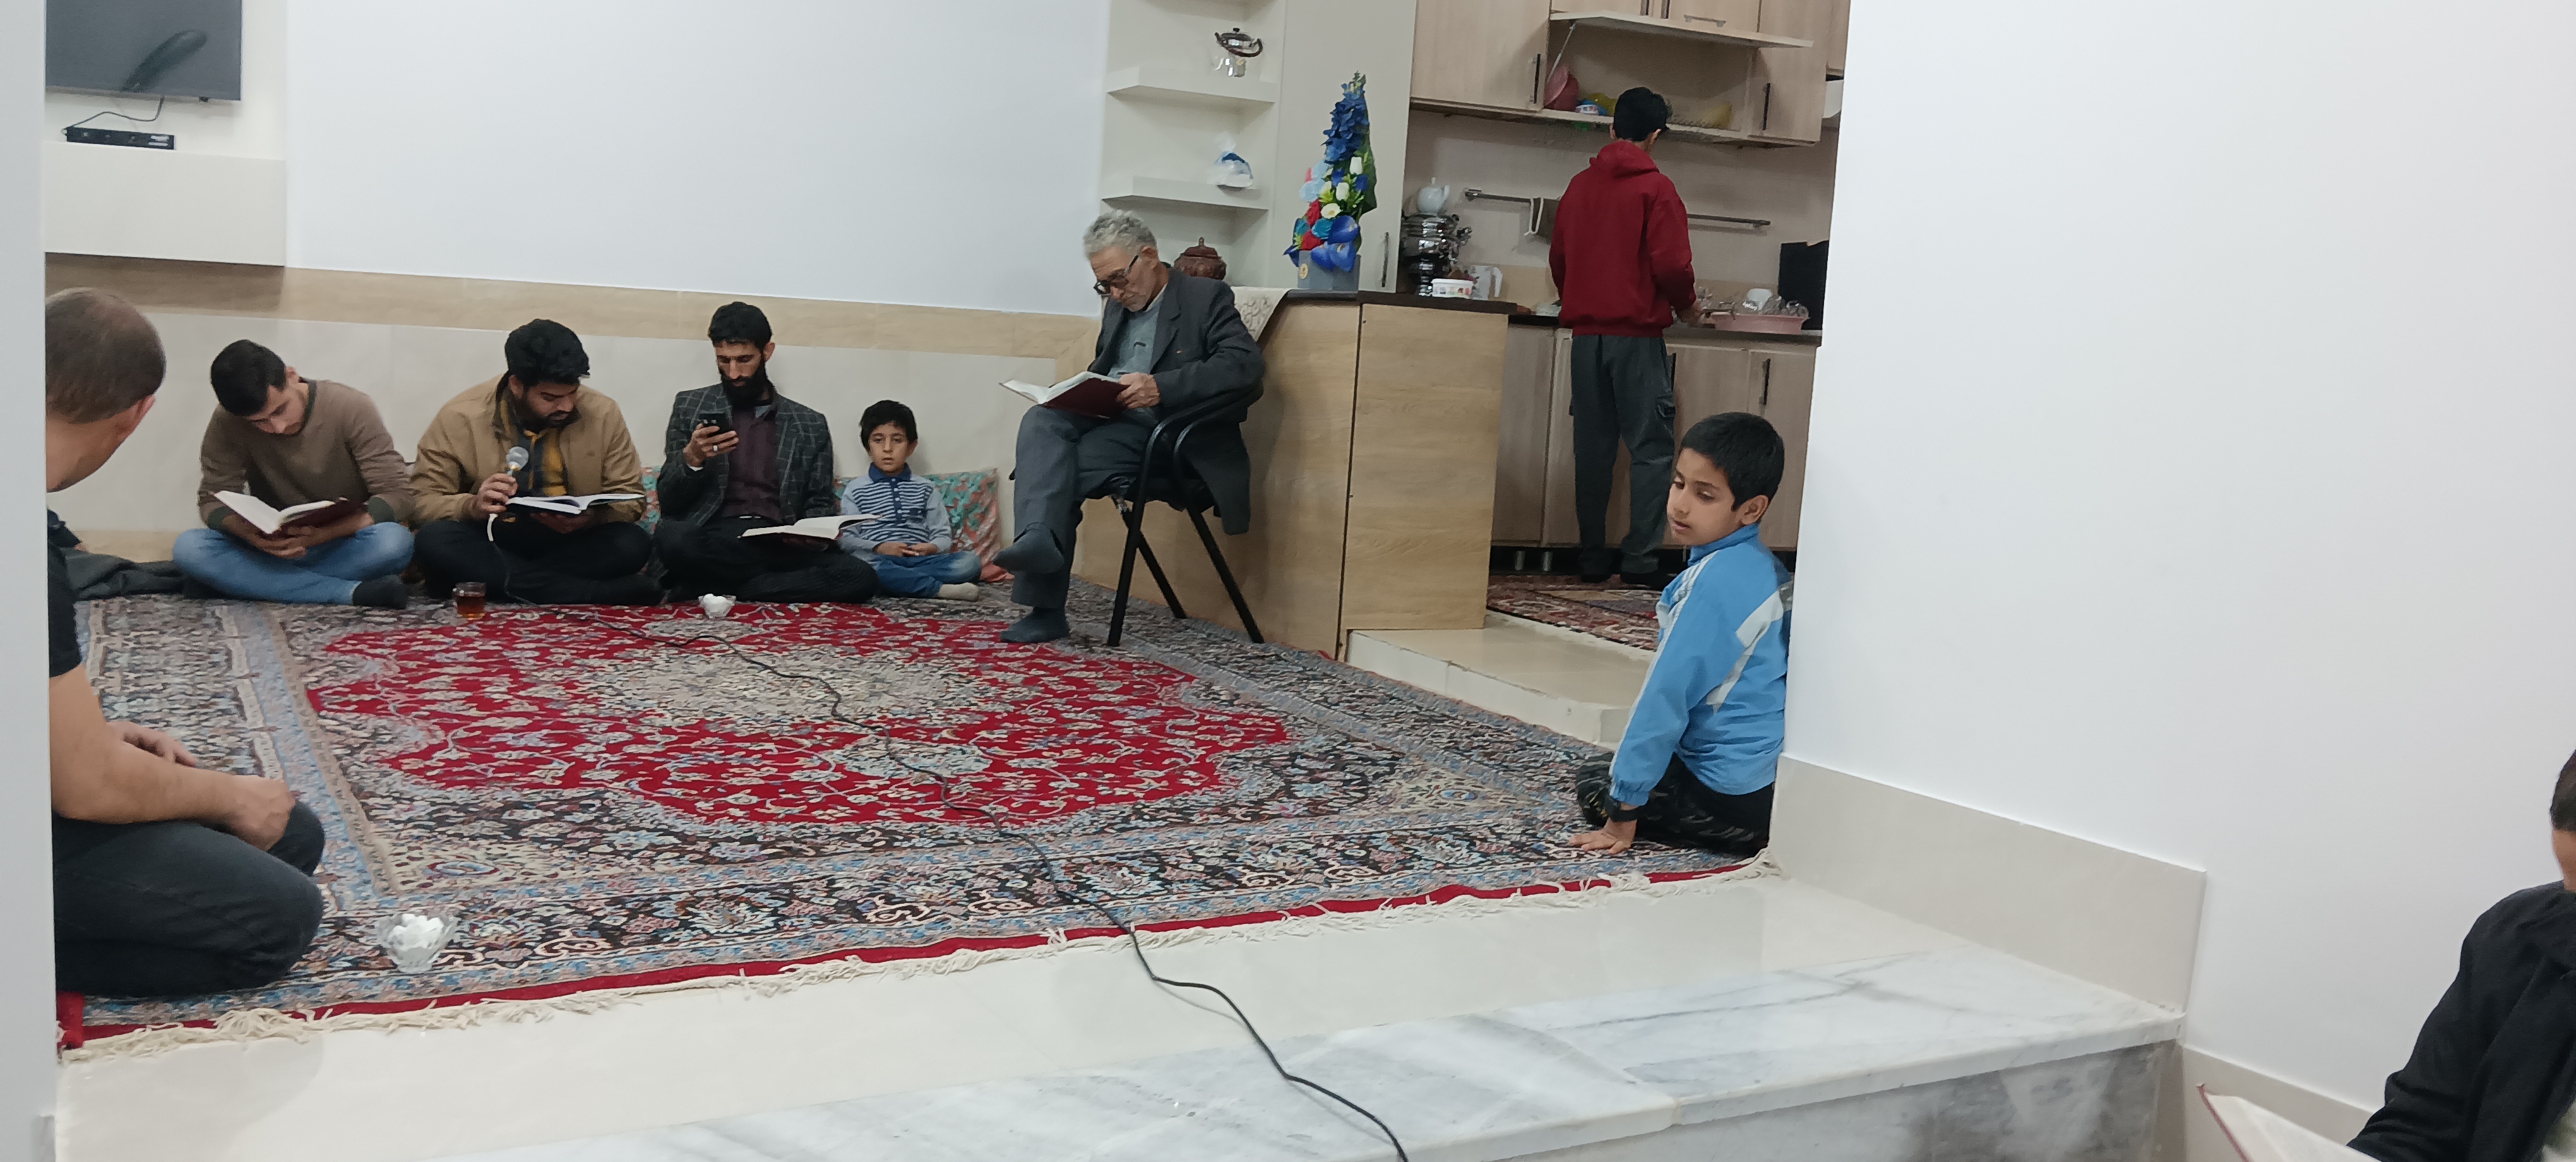 نشست فرهنگی و روشنگری بچه های مسجد در منزل مدیرکانون